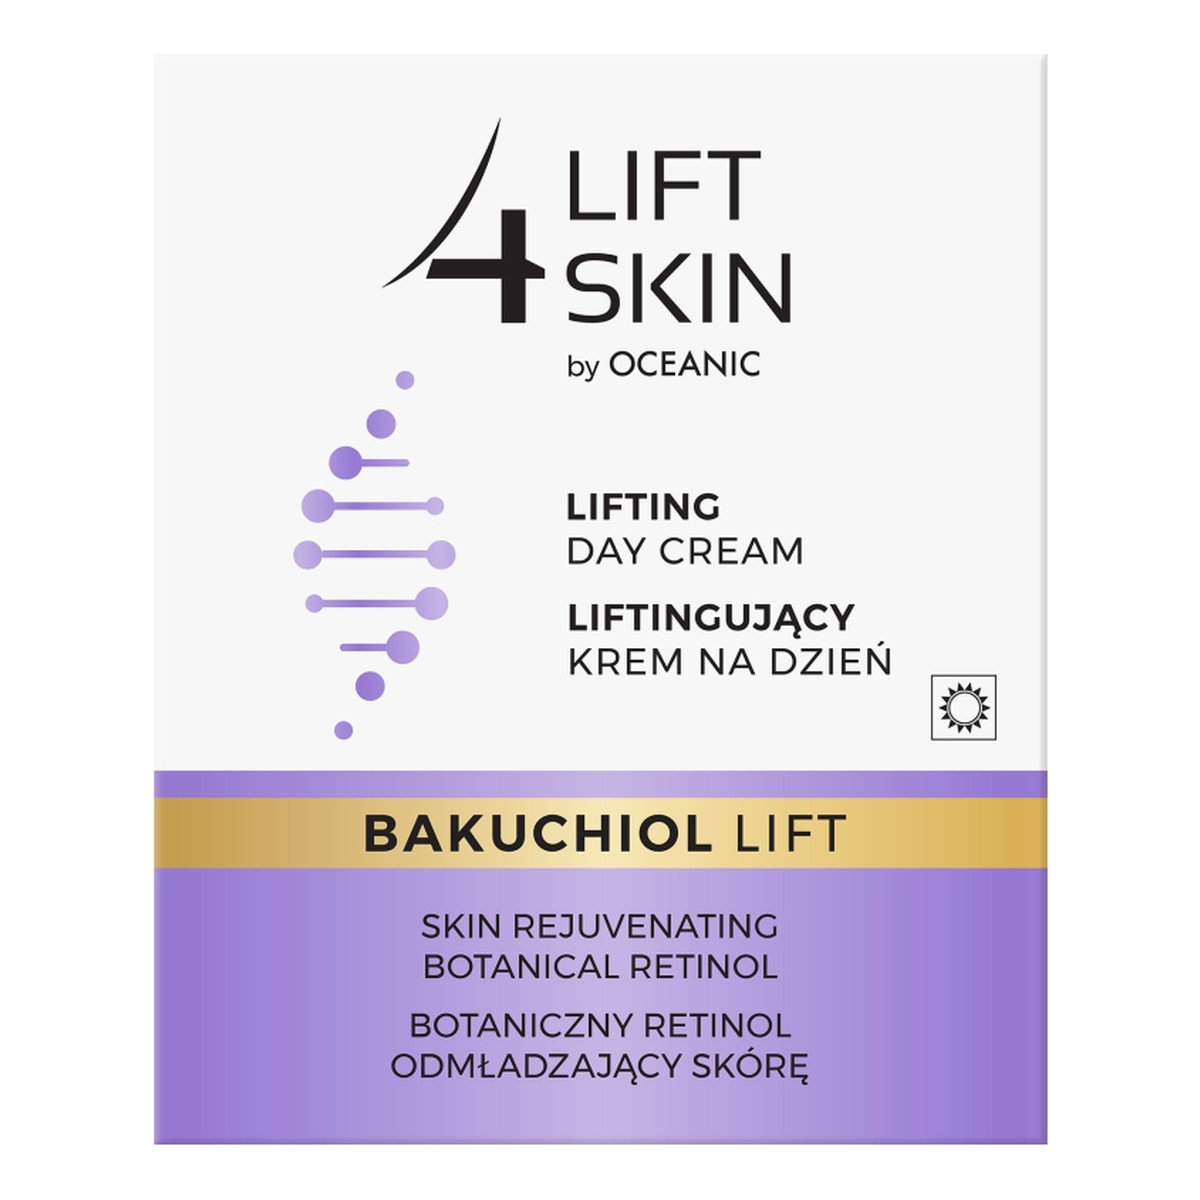 Lift 4 Skin Bakuchiol Lift liftingujący krem na dzień Botaniczny Retinol 50ml